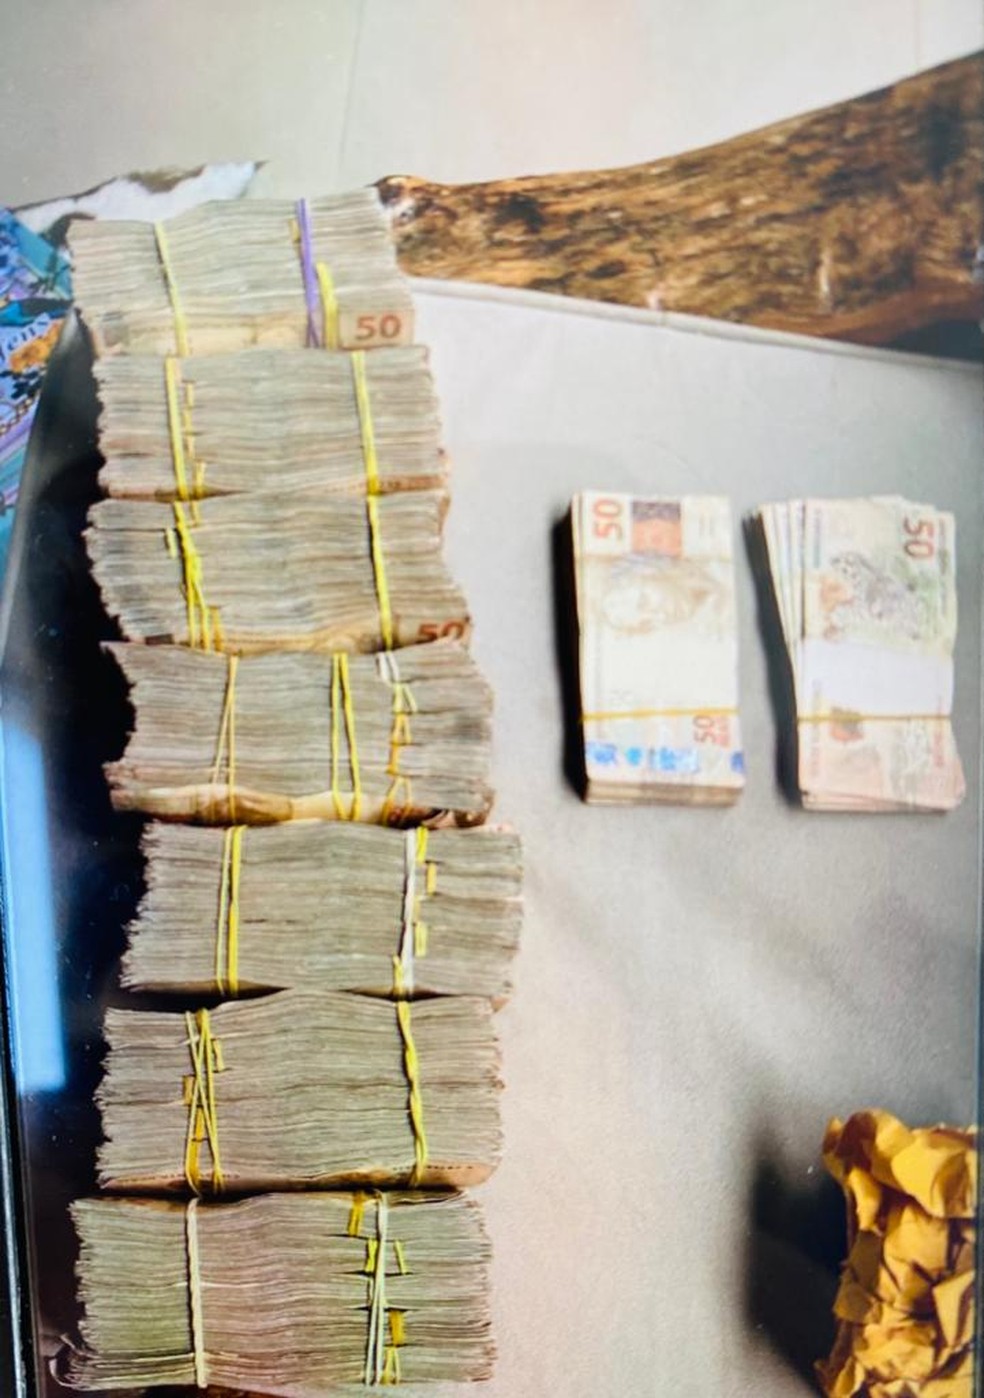 Dinheiro apreendido com suspeitos durante operação da PF — Foto: PF/Divulgação